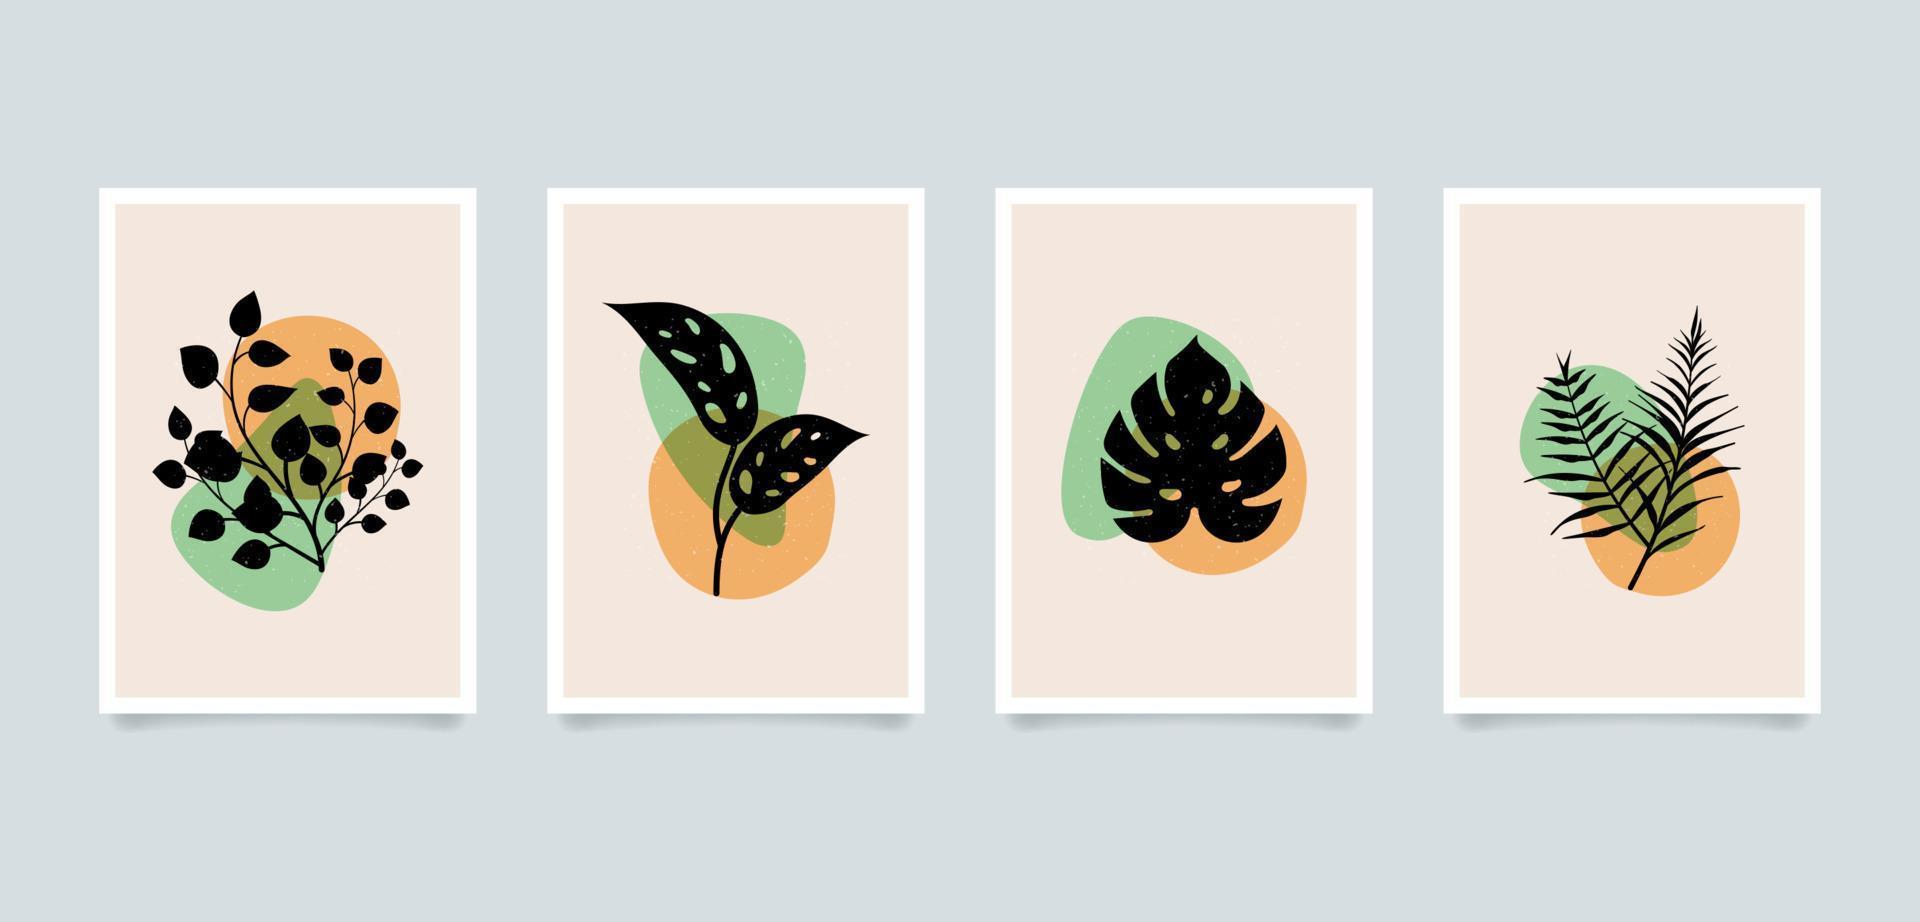 illustrazioni di piante astratte minimaliste estetiche moderne. collezione di poster d'arte con decorazioni da parete in composizione contemporanea. vettore